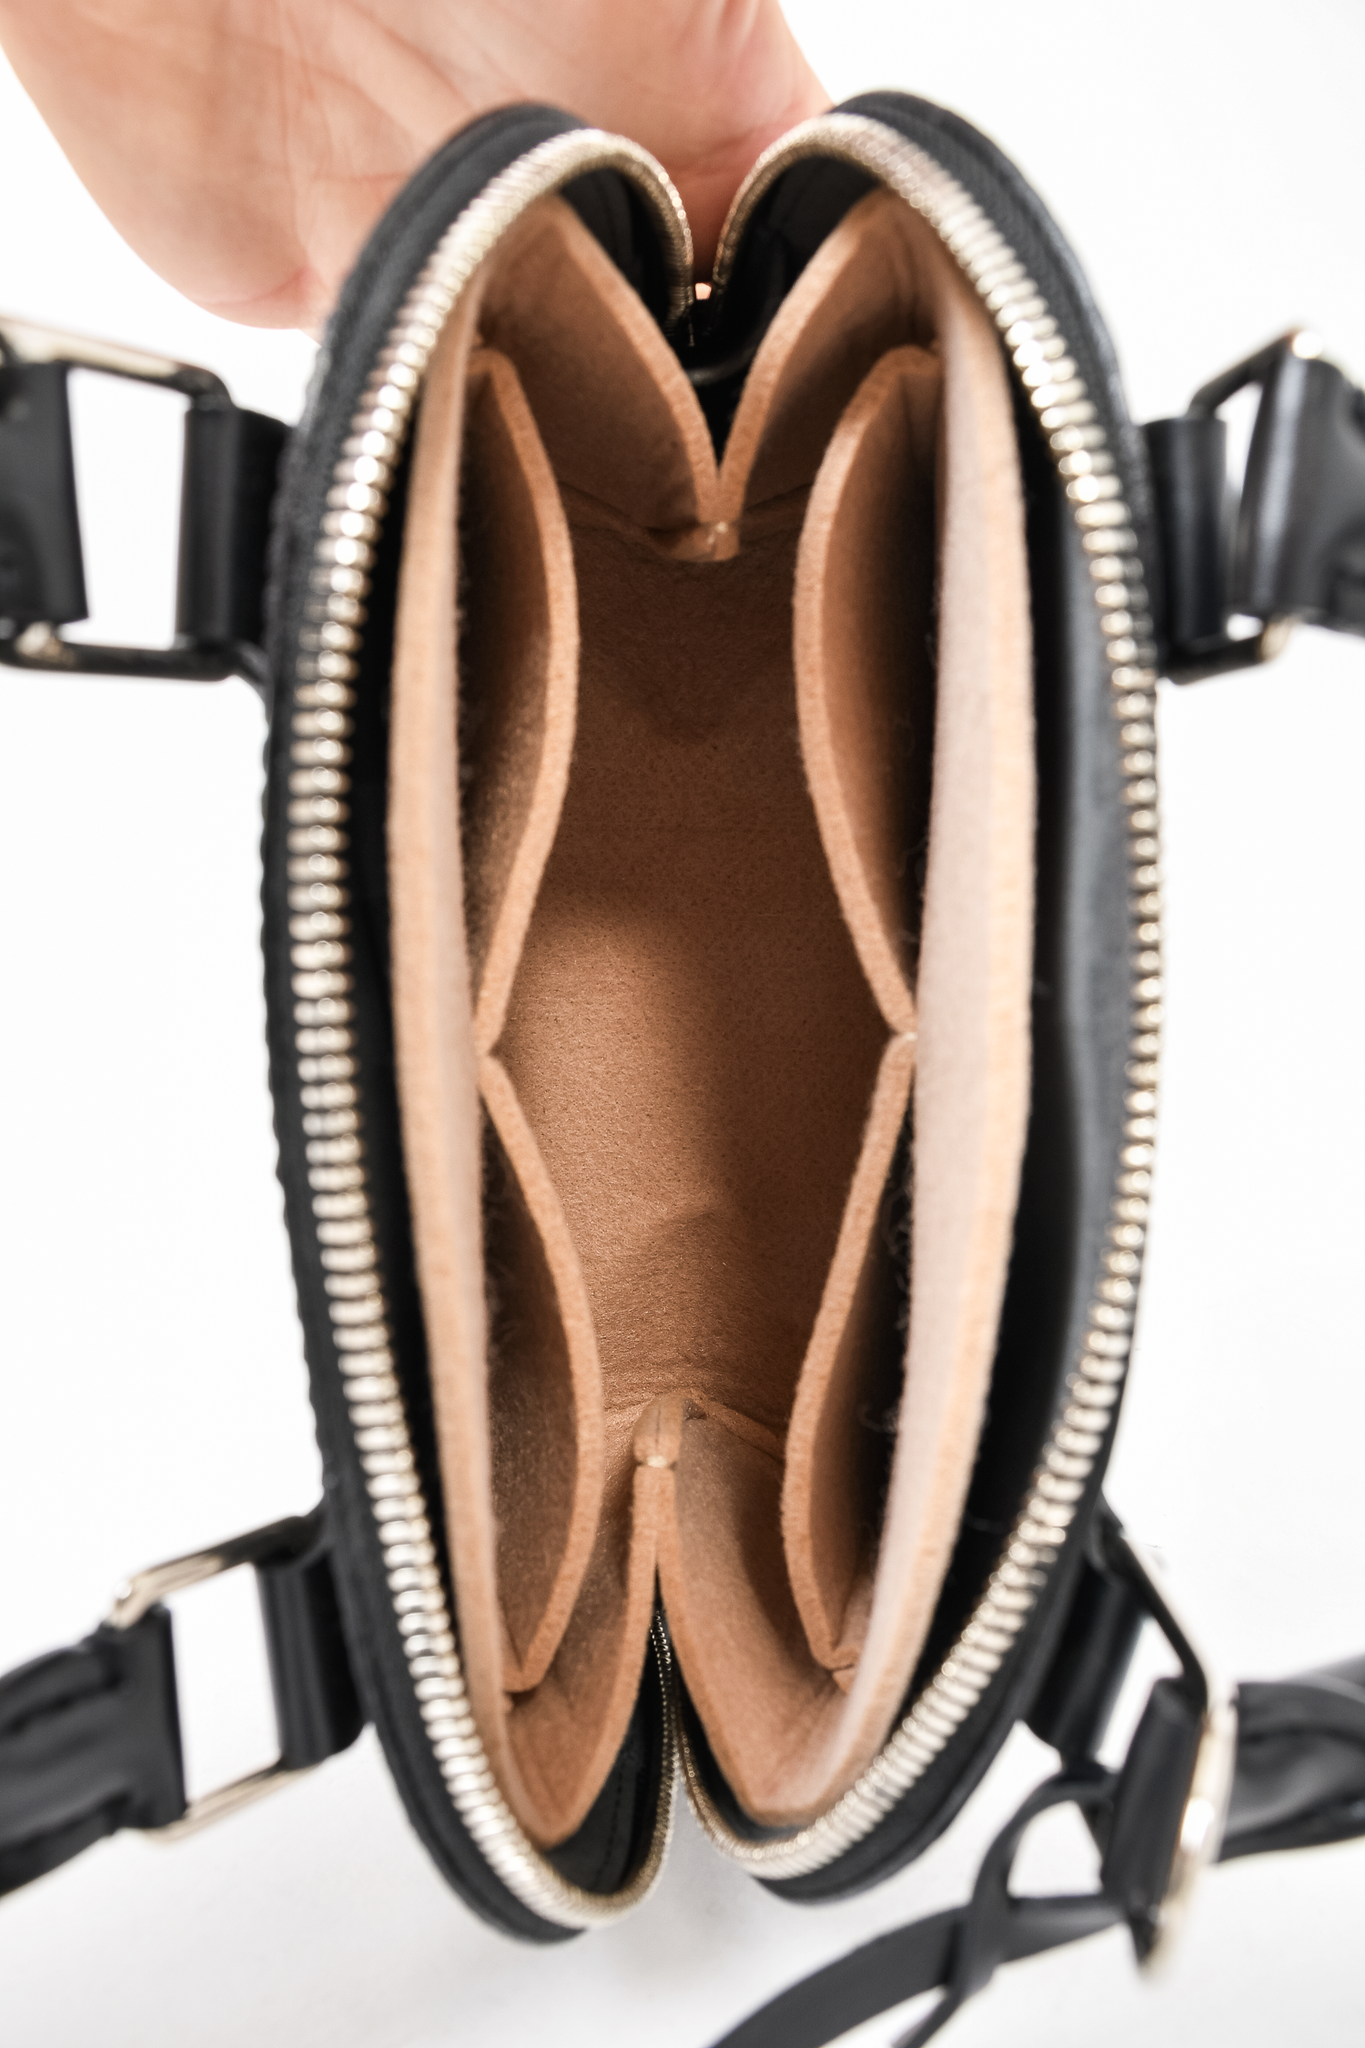 Louis Vuitton Black Epi Leather Alma BB Top Handle w/ Strap